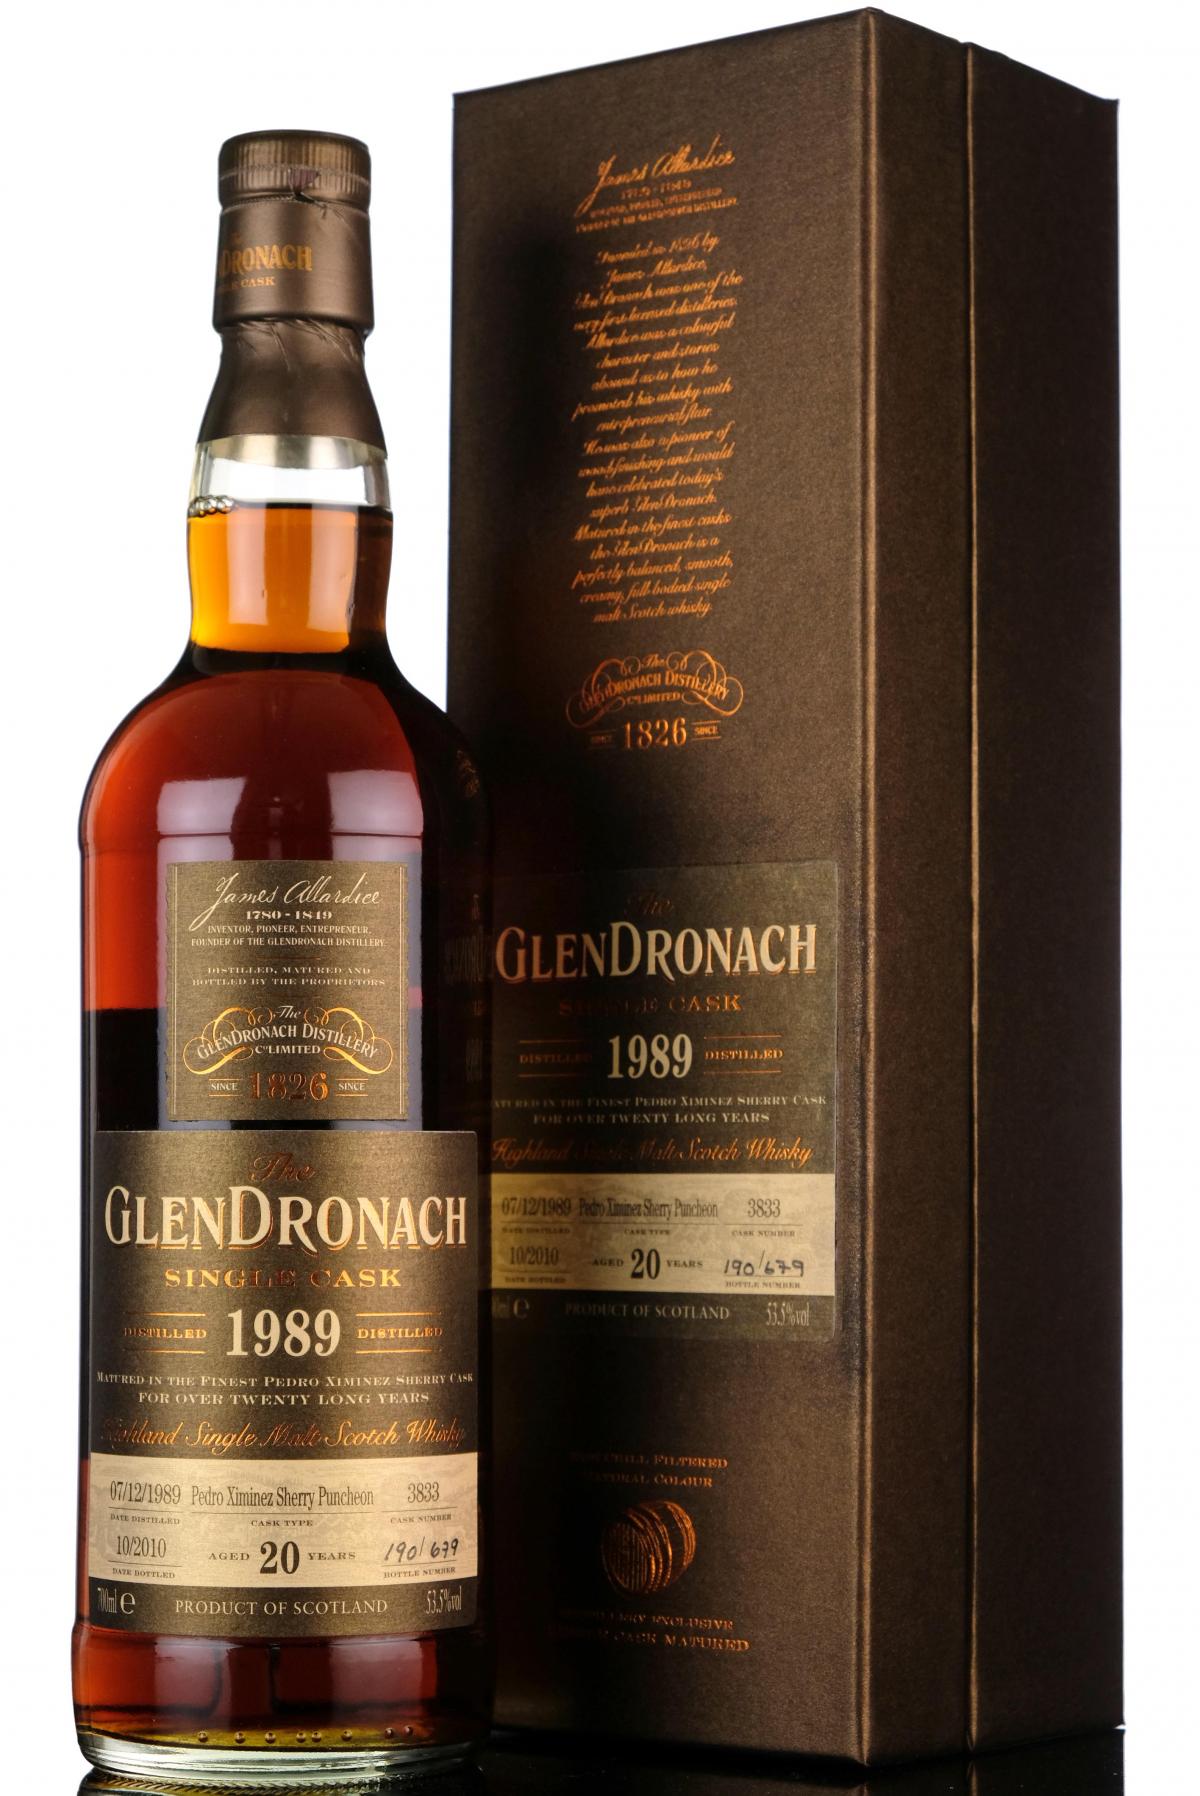 Glendronach 1989-2010 - 20 Year Old - Single Cask 3833 - Batch 3